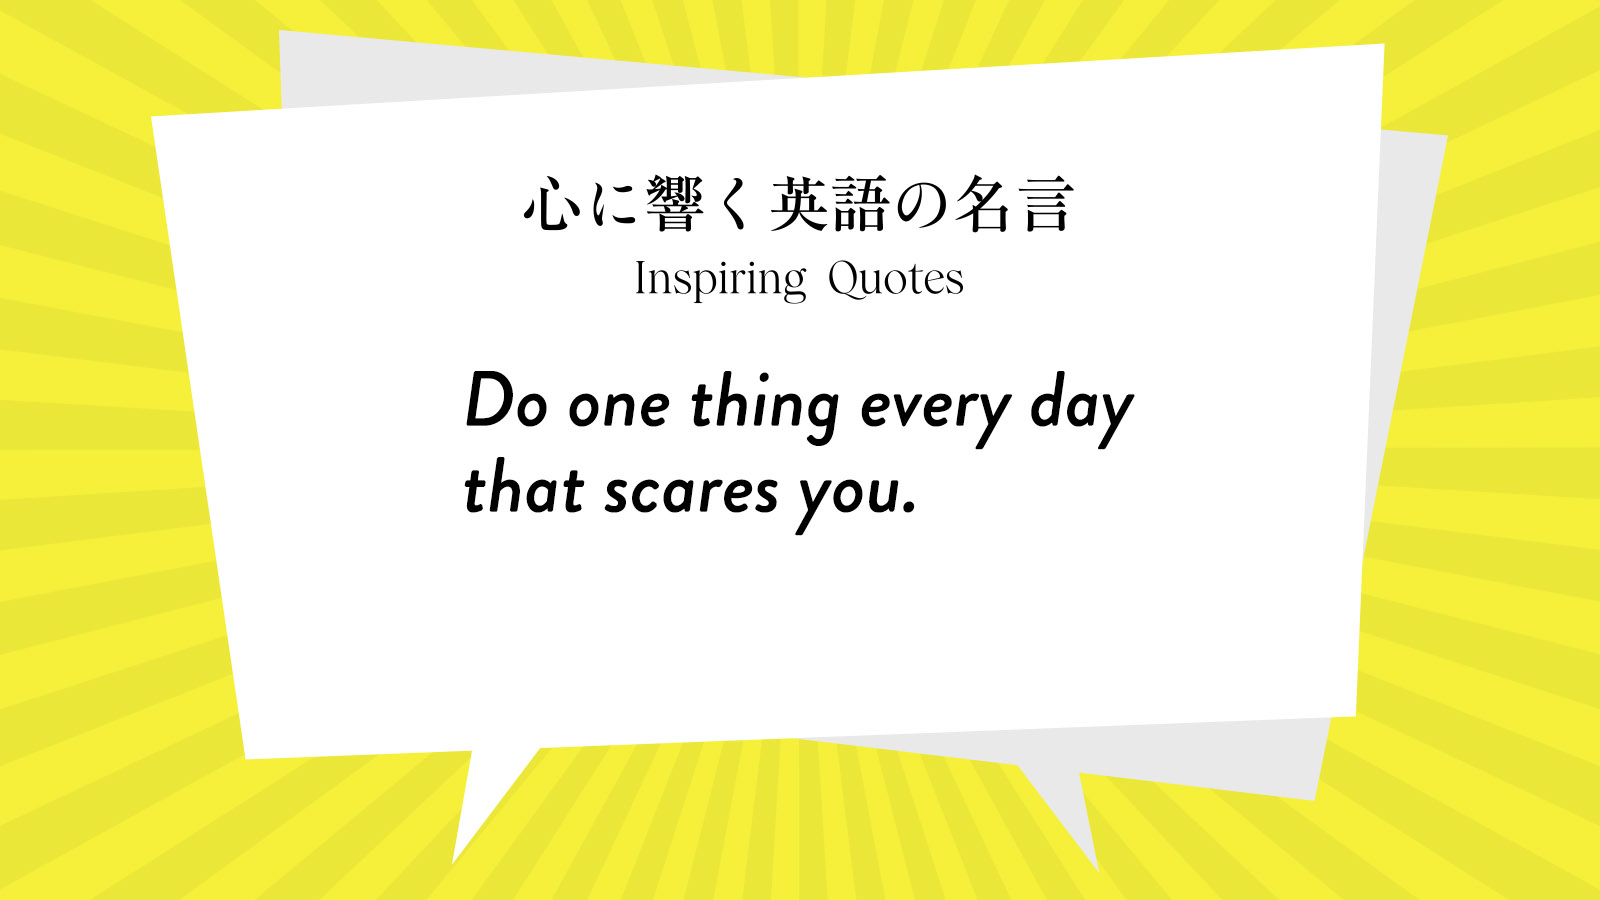 今週の名言 “Do one thing every day that scares you.” | Inspiring Quotes: 心に響く英語の名言